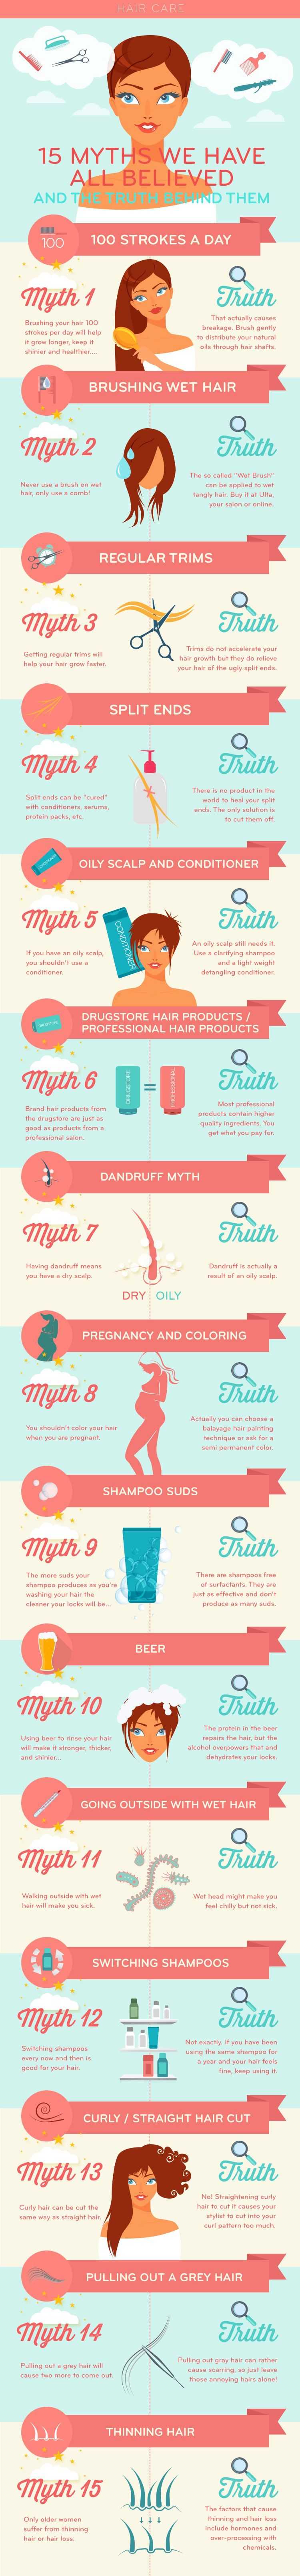 Hair Care Myths And Truth